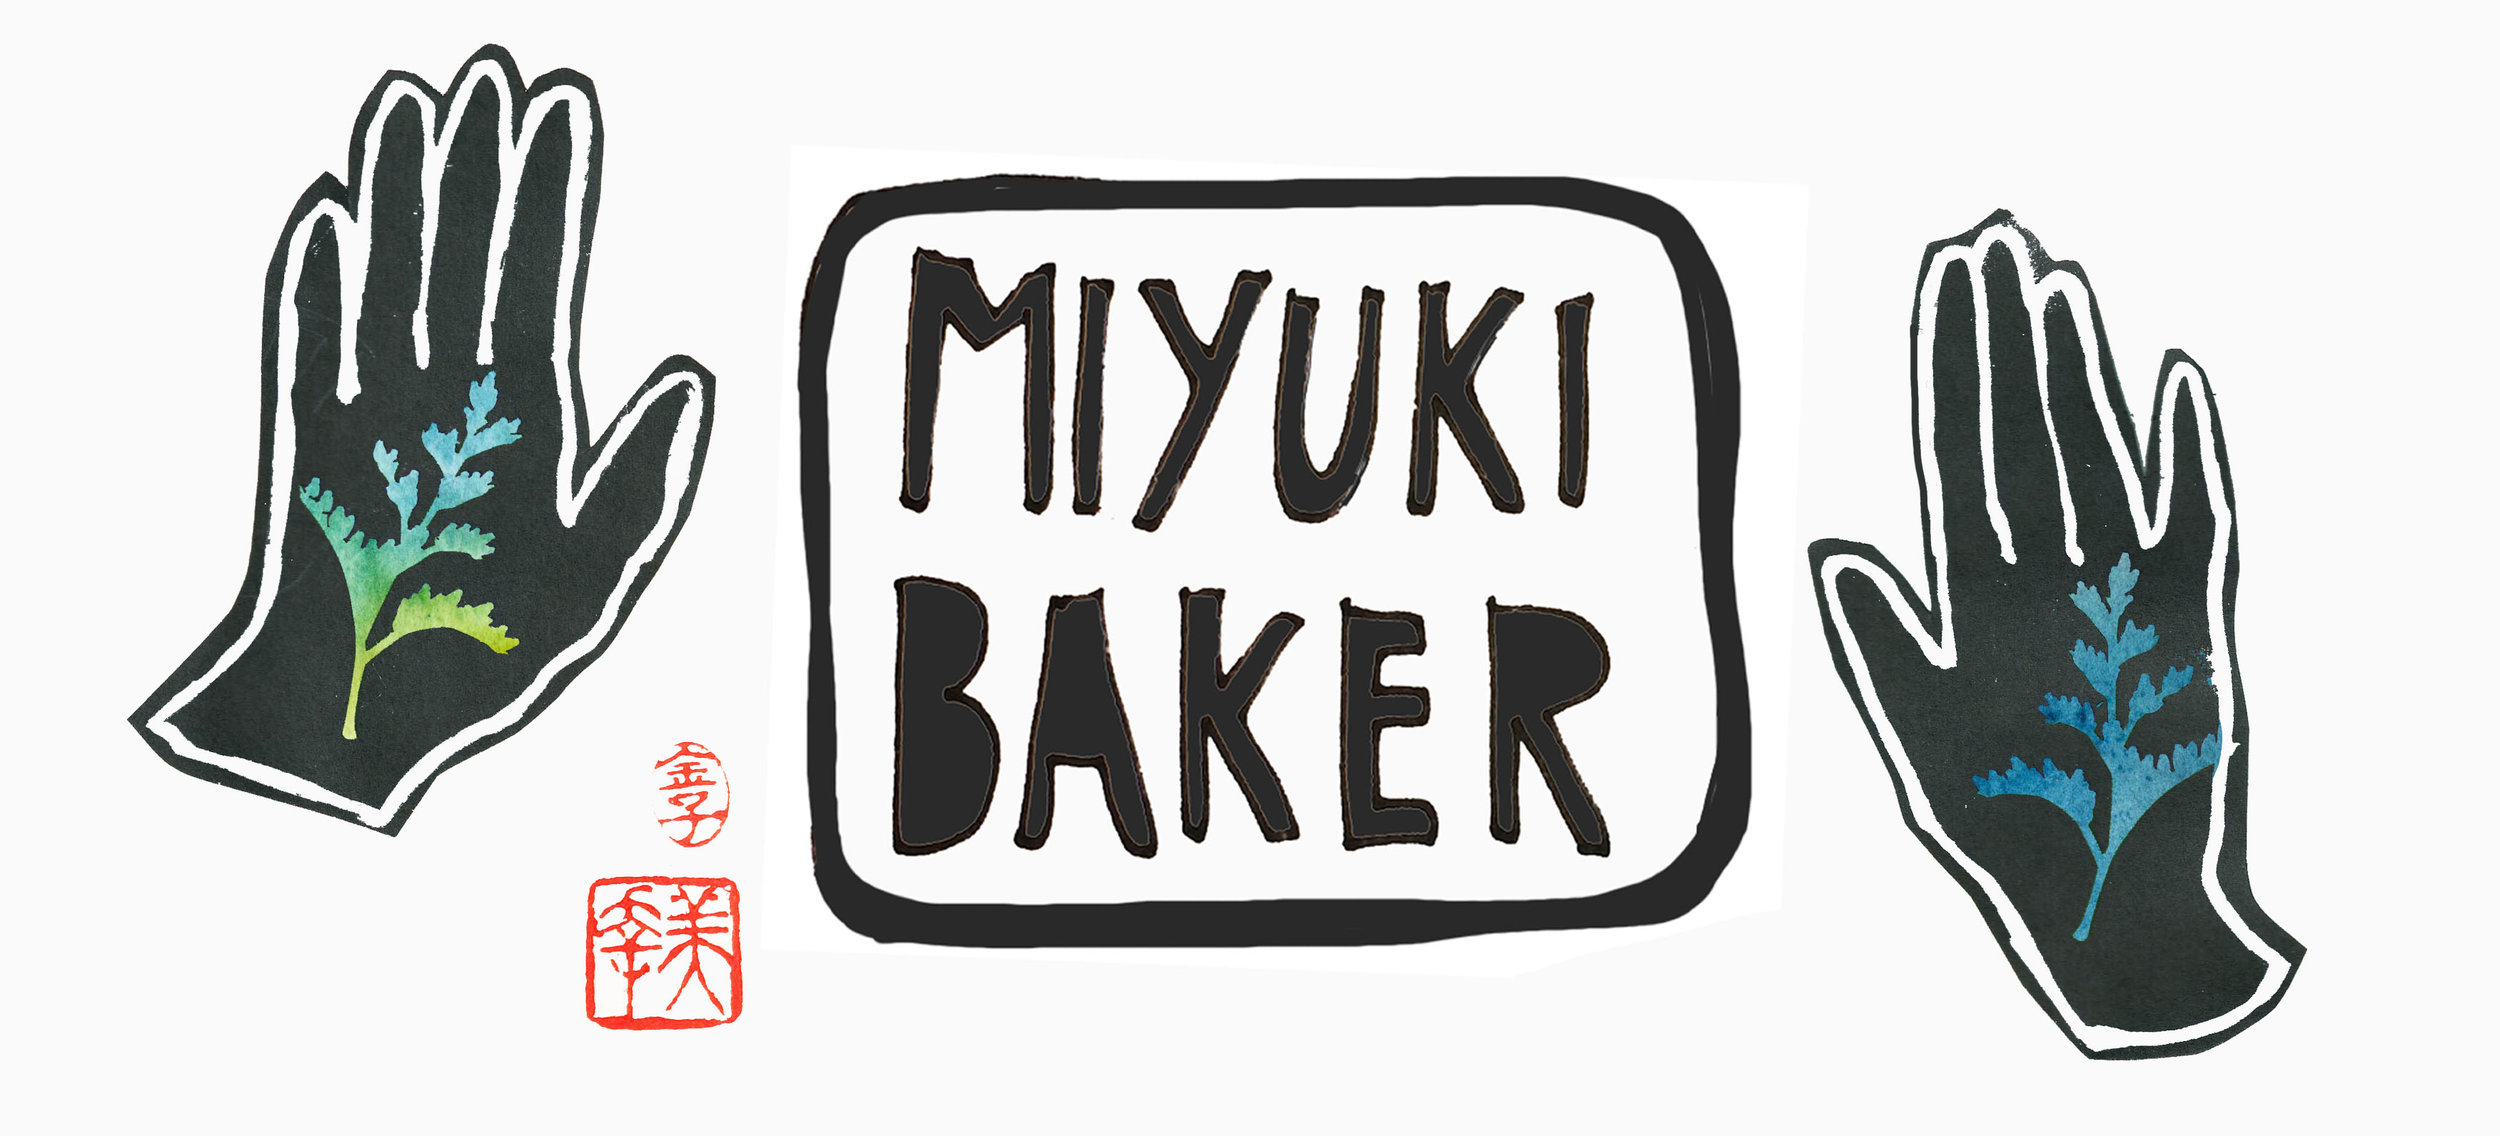 miyuki baker